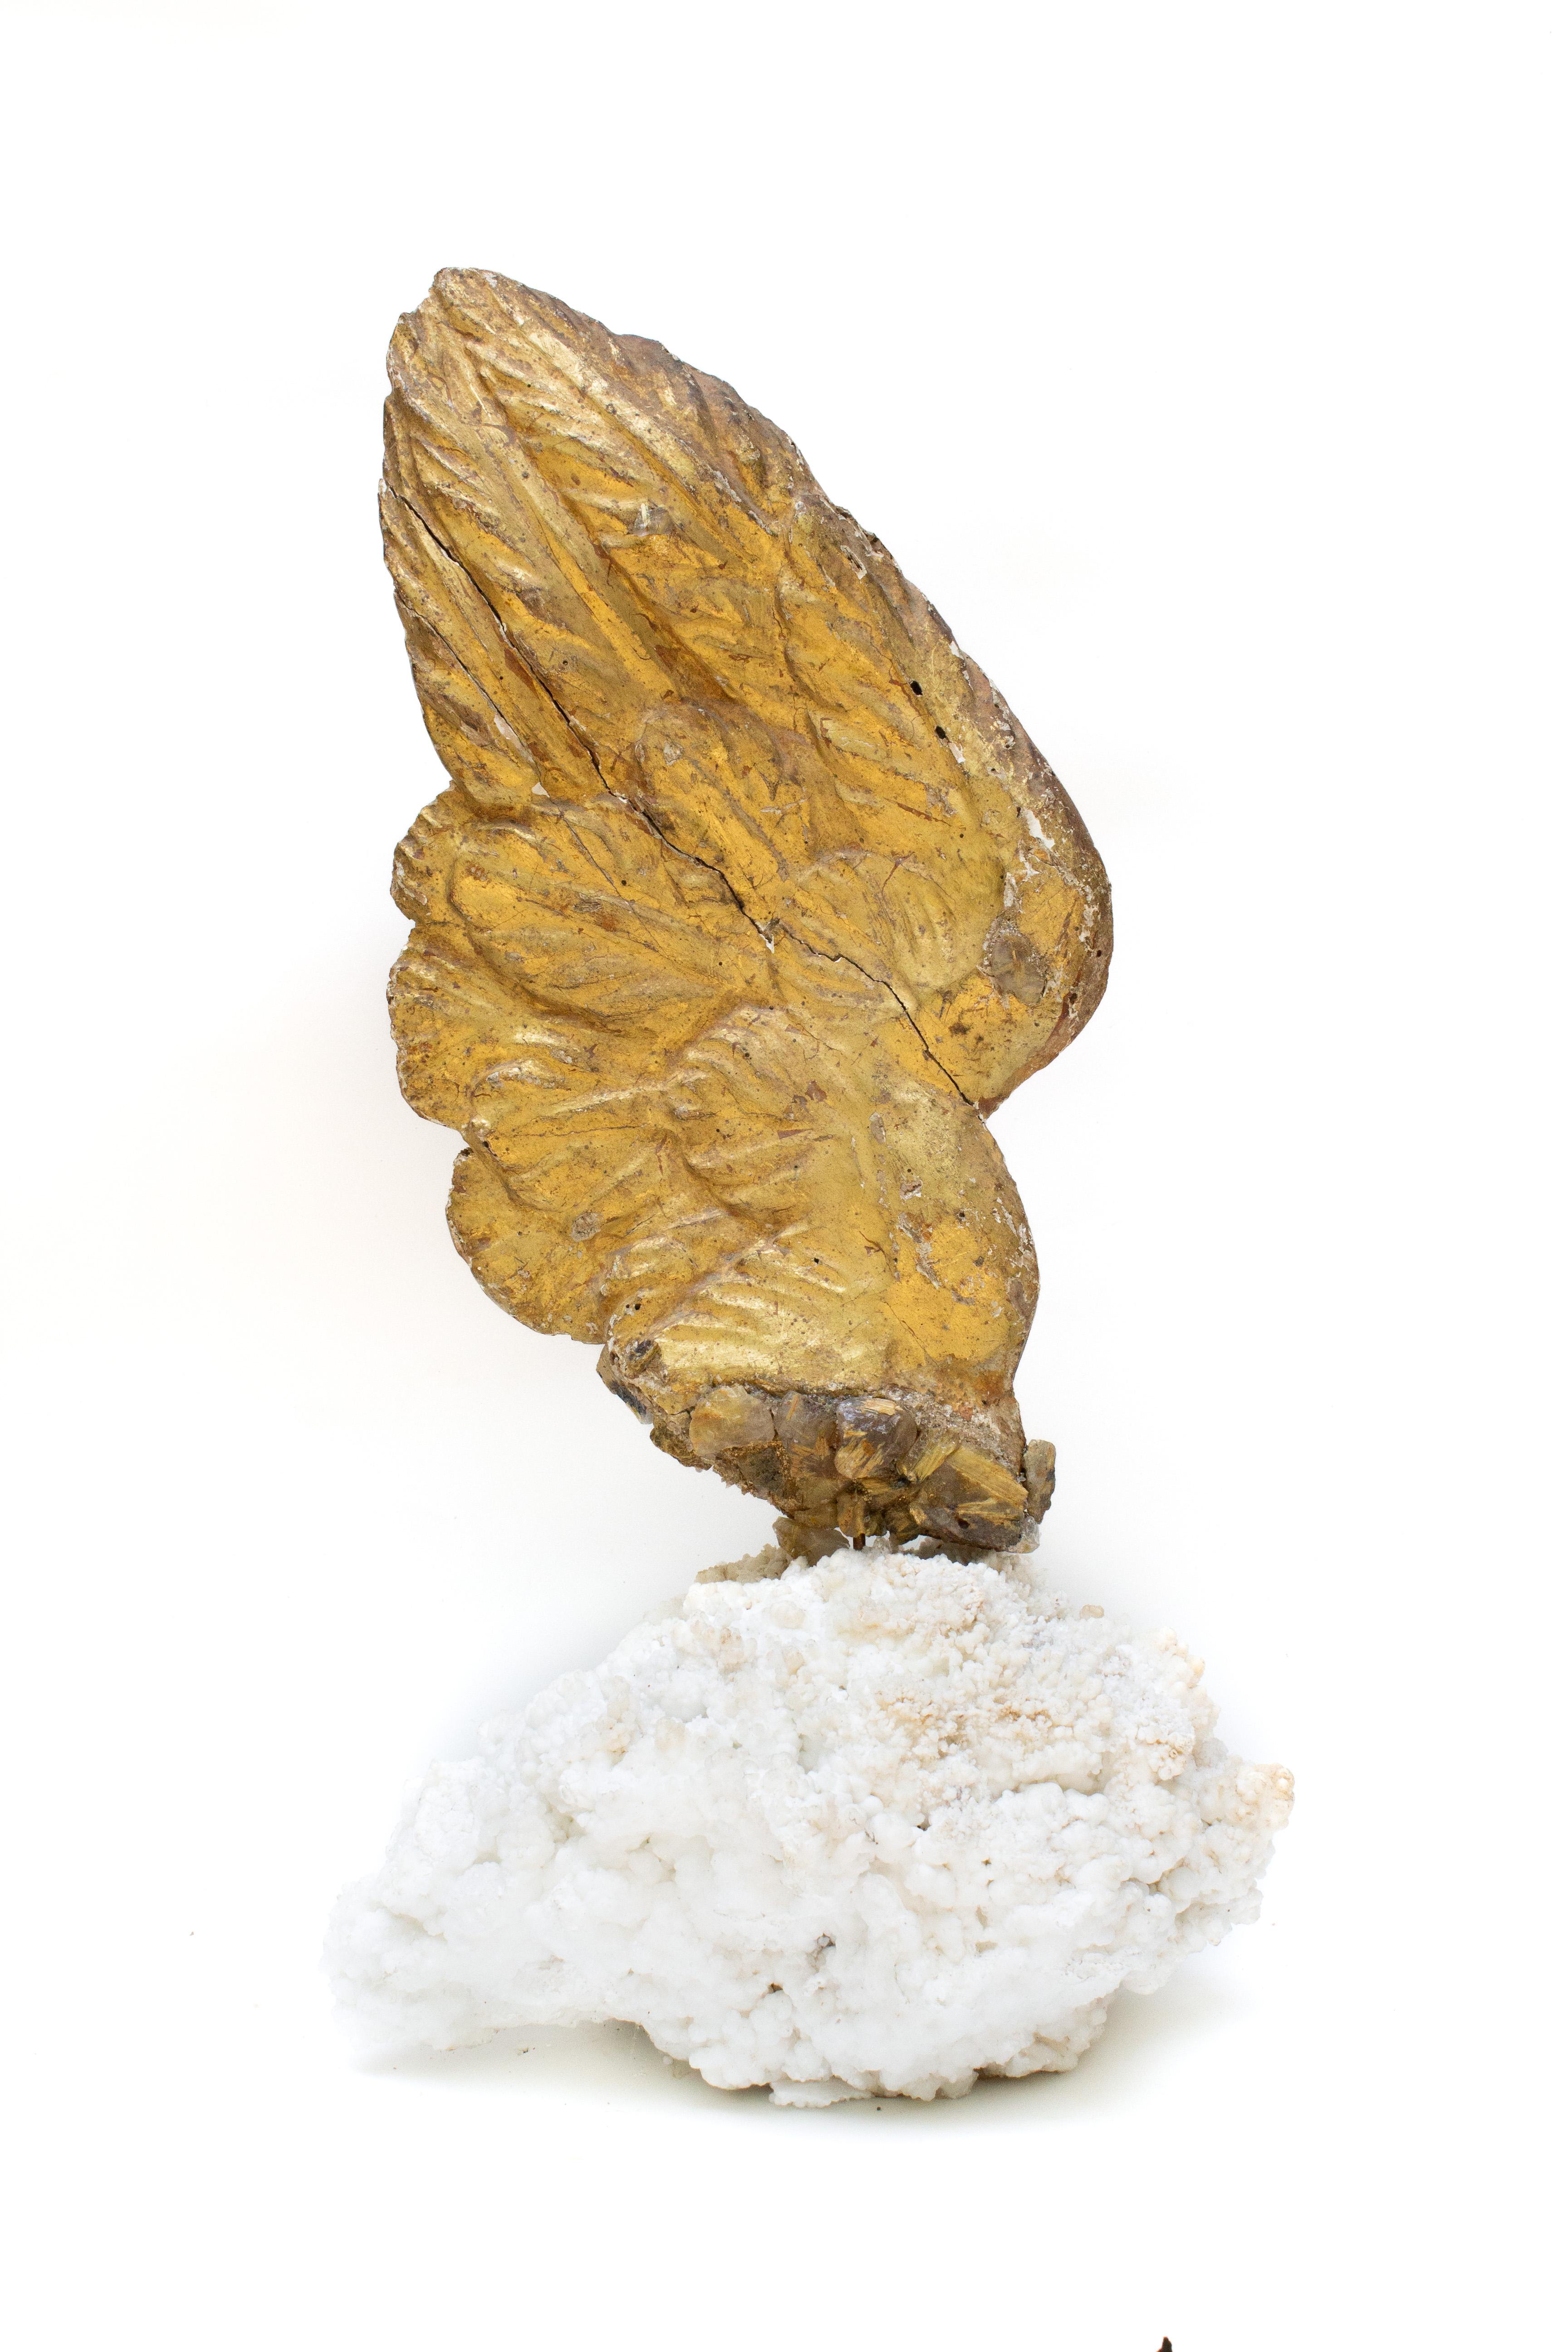 Italienischer Engelsflügel aus Blattgold des 18. Jahrhunderts mit rutilierten Quarzkristallen auf einem natürlich geformten Aragonit-Kristallcluster. Der handgeschnitzte Engelsflügel war einst Teil einer himmlischen Engelsdarstellung in einer